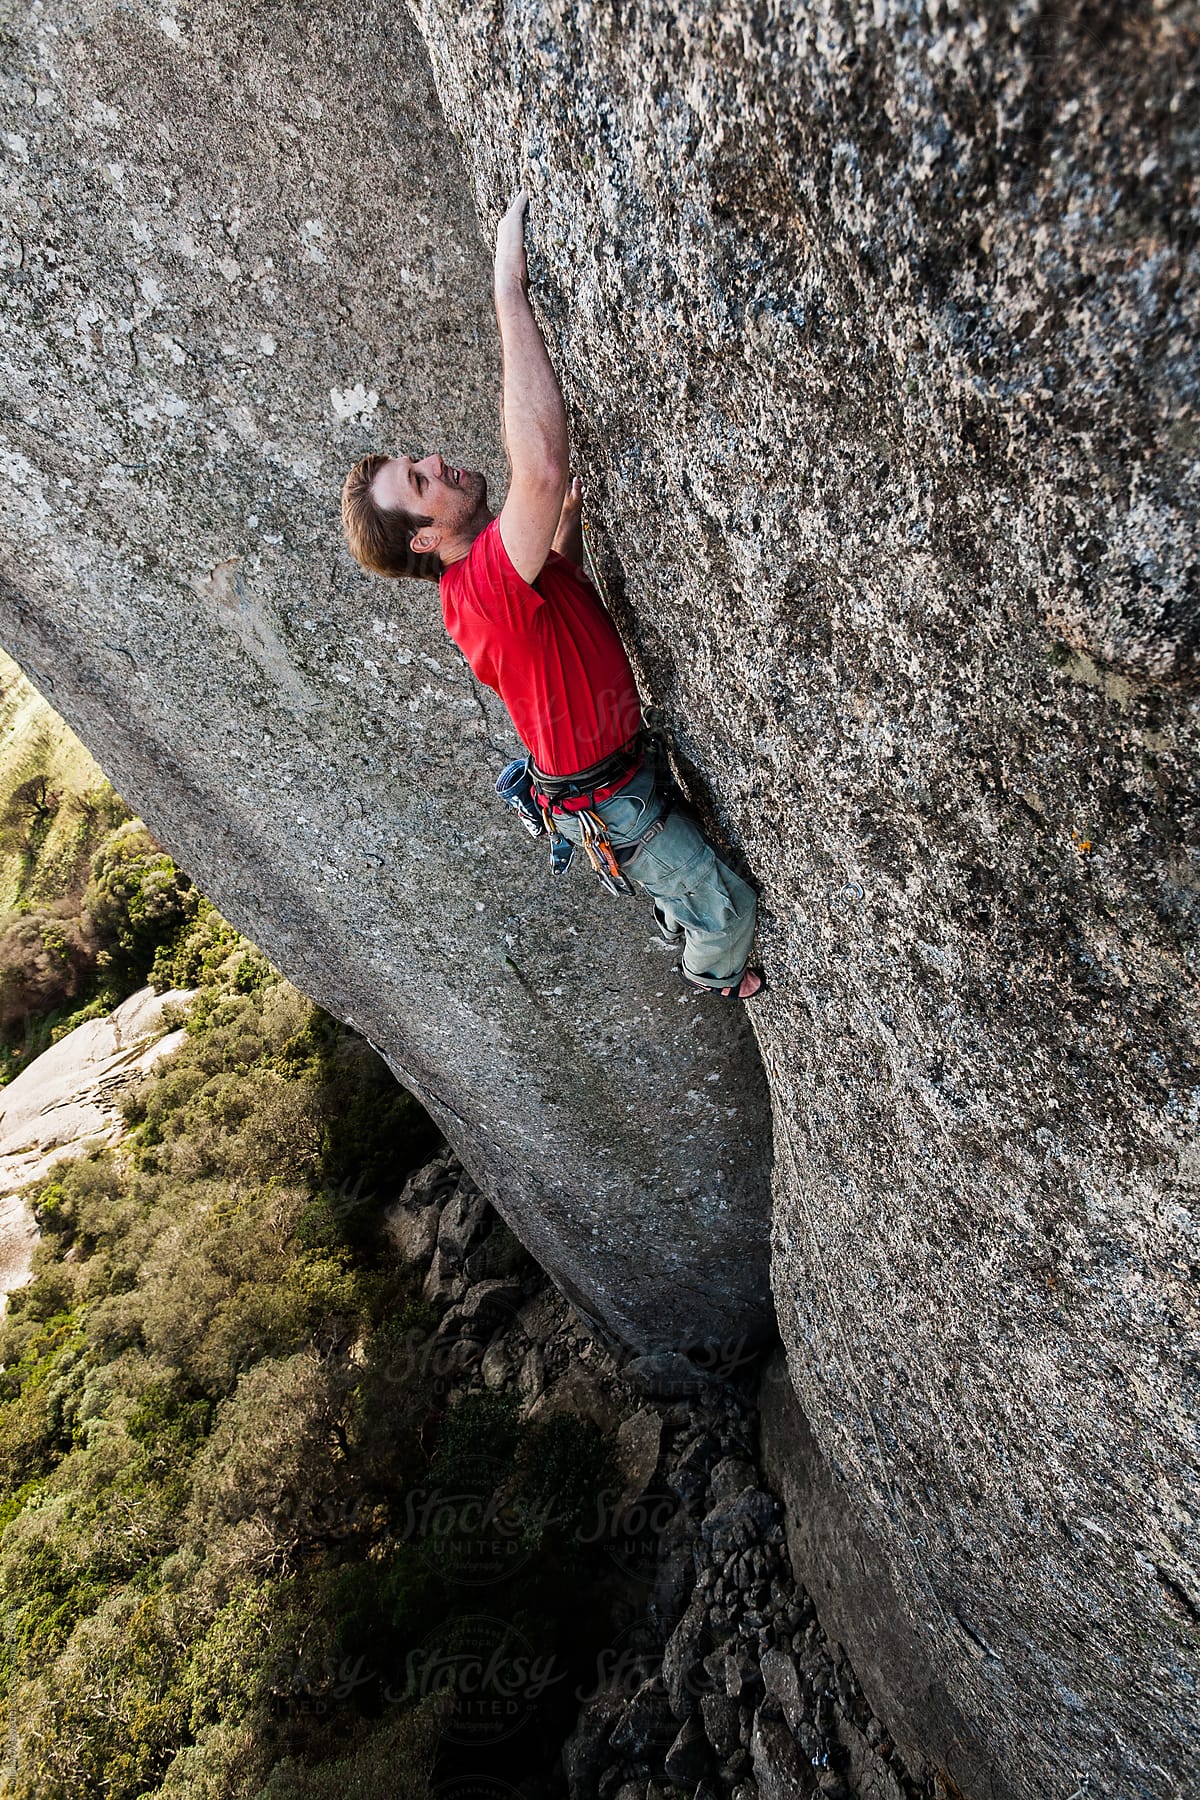 Male rock climber climbing a vertical cliff face in a mountain